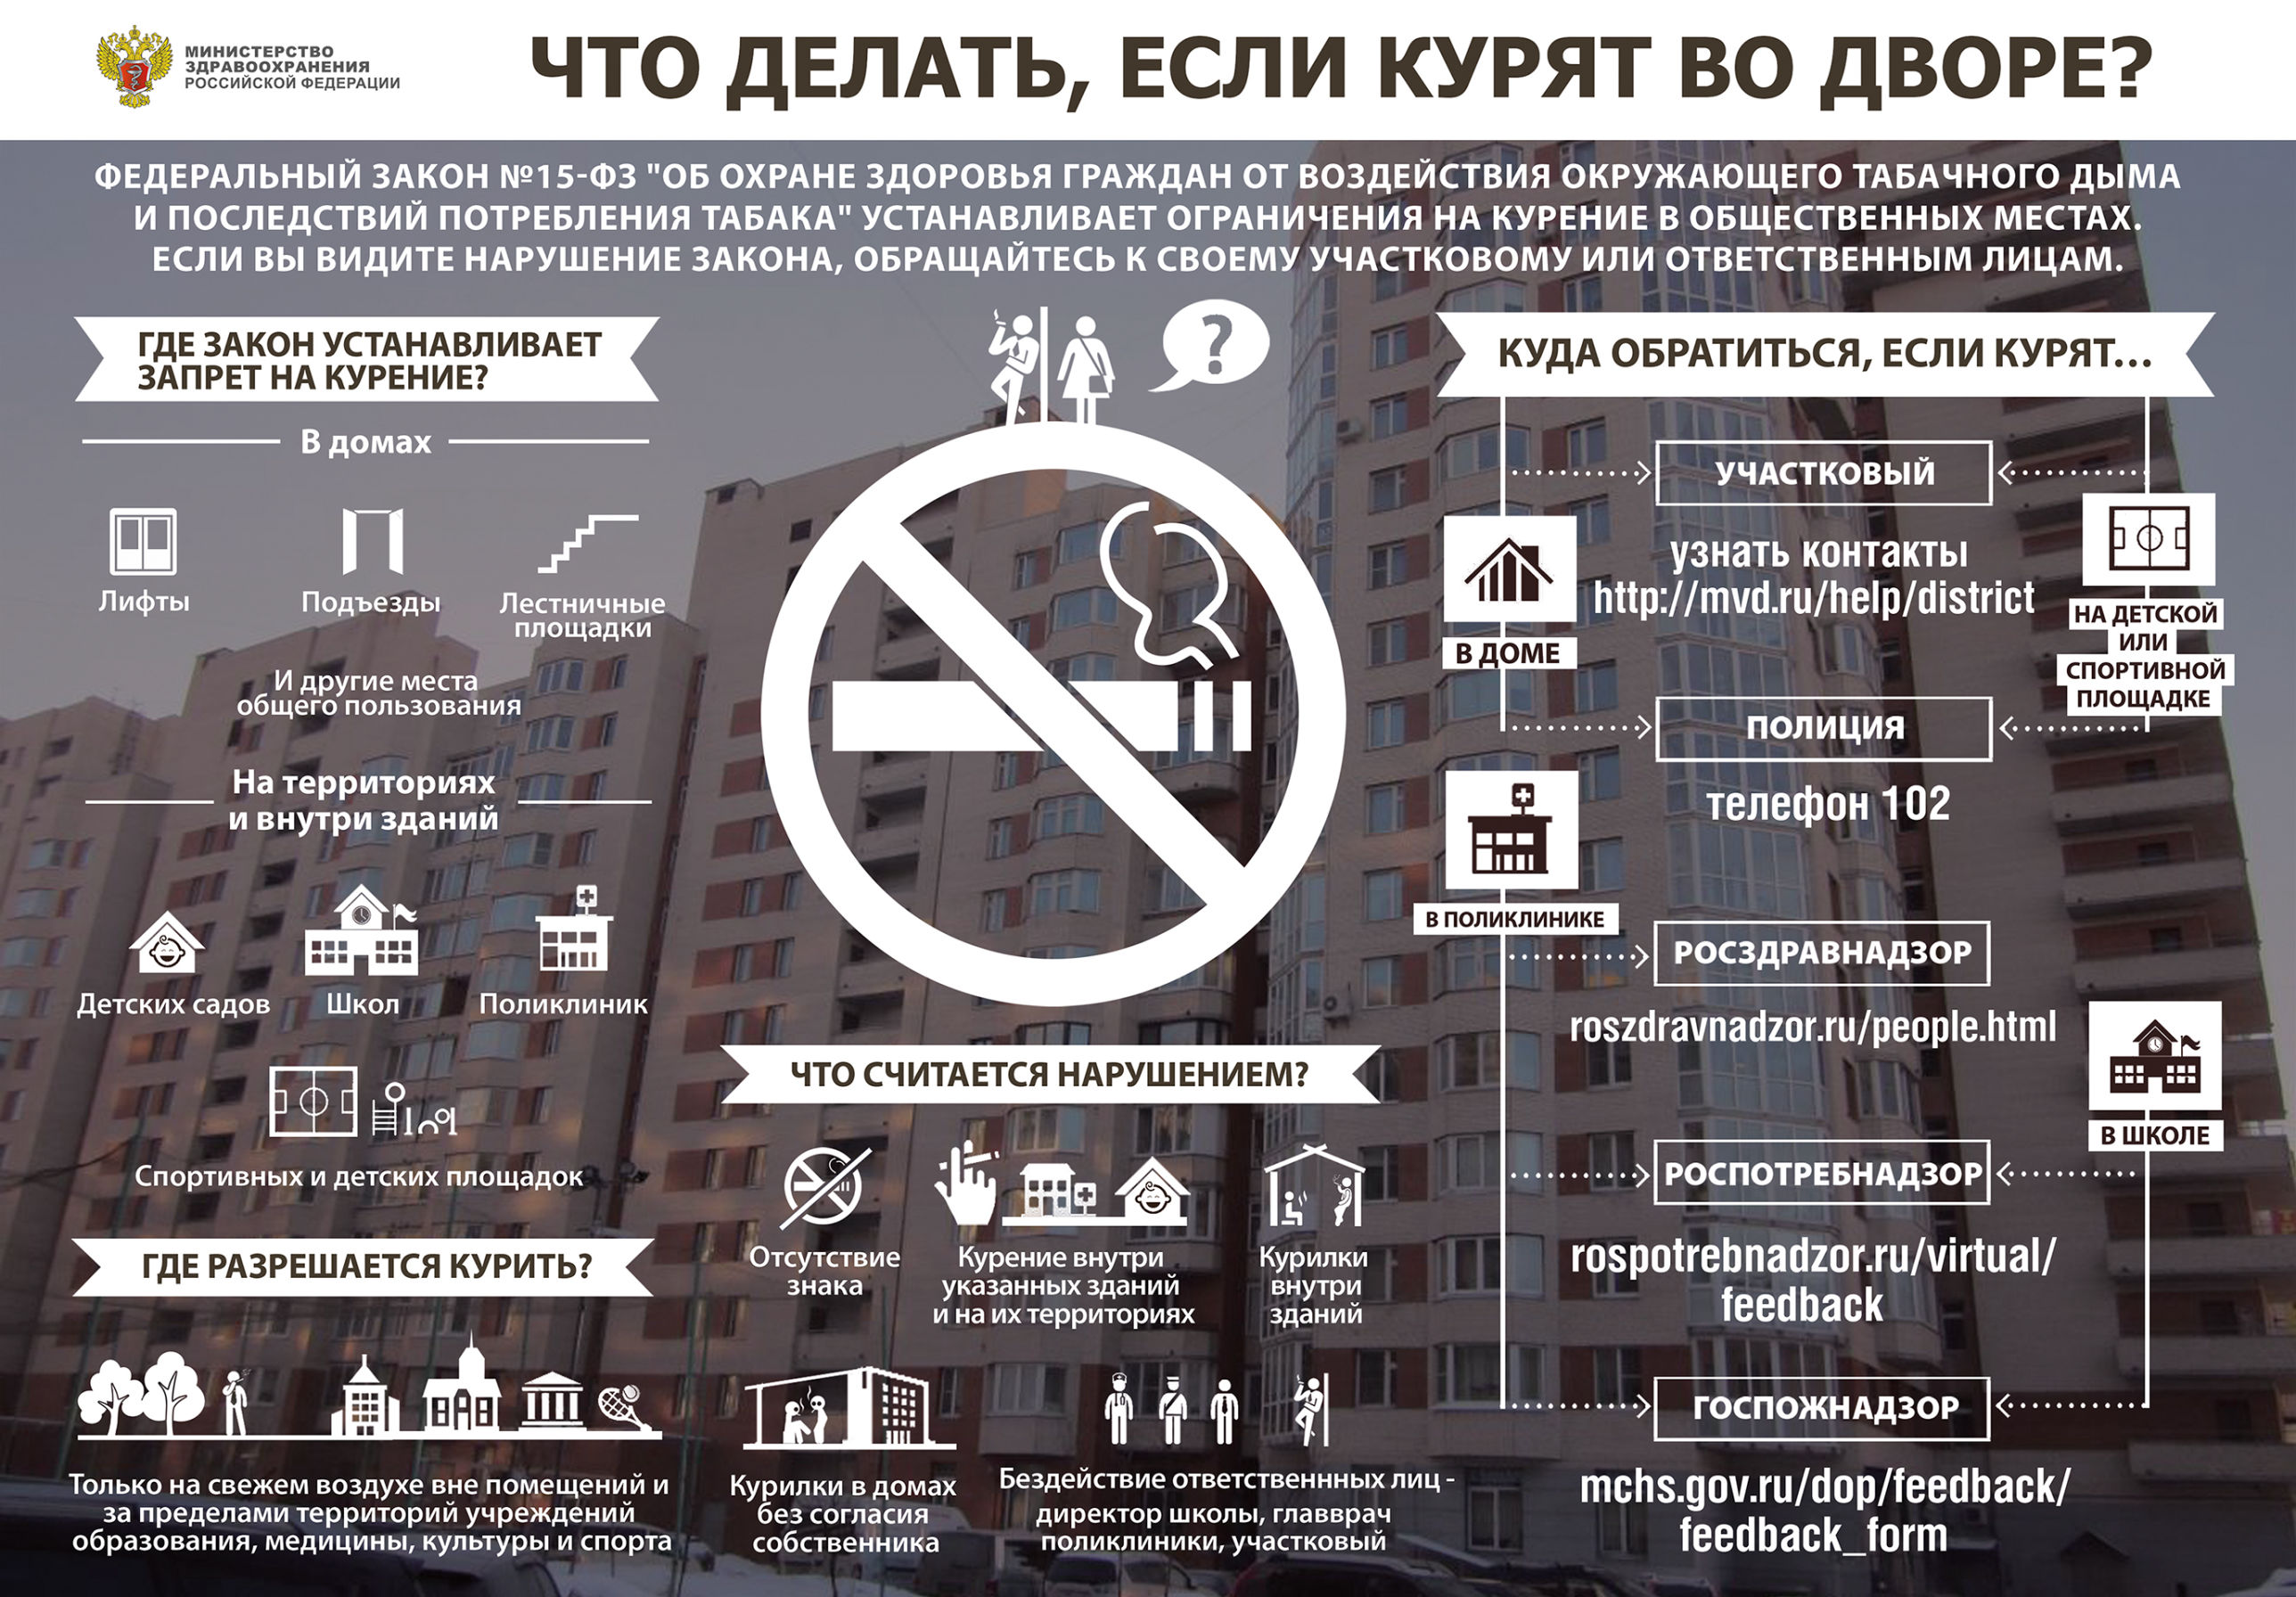 Запрет сигарет в россии. Закон о курении. Запрет курения в общественных местах. Закон о запрете курения в общественных местах. Законодательство о курении в общественных местах.